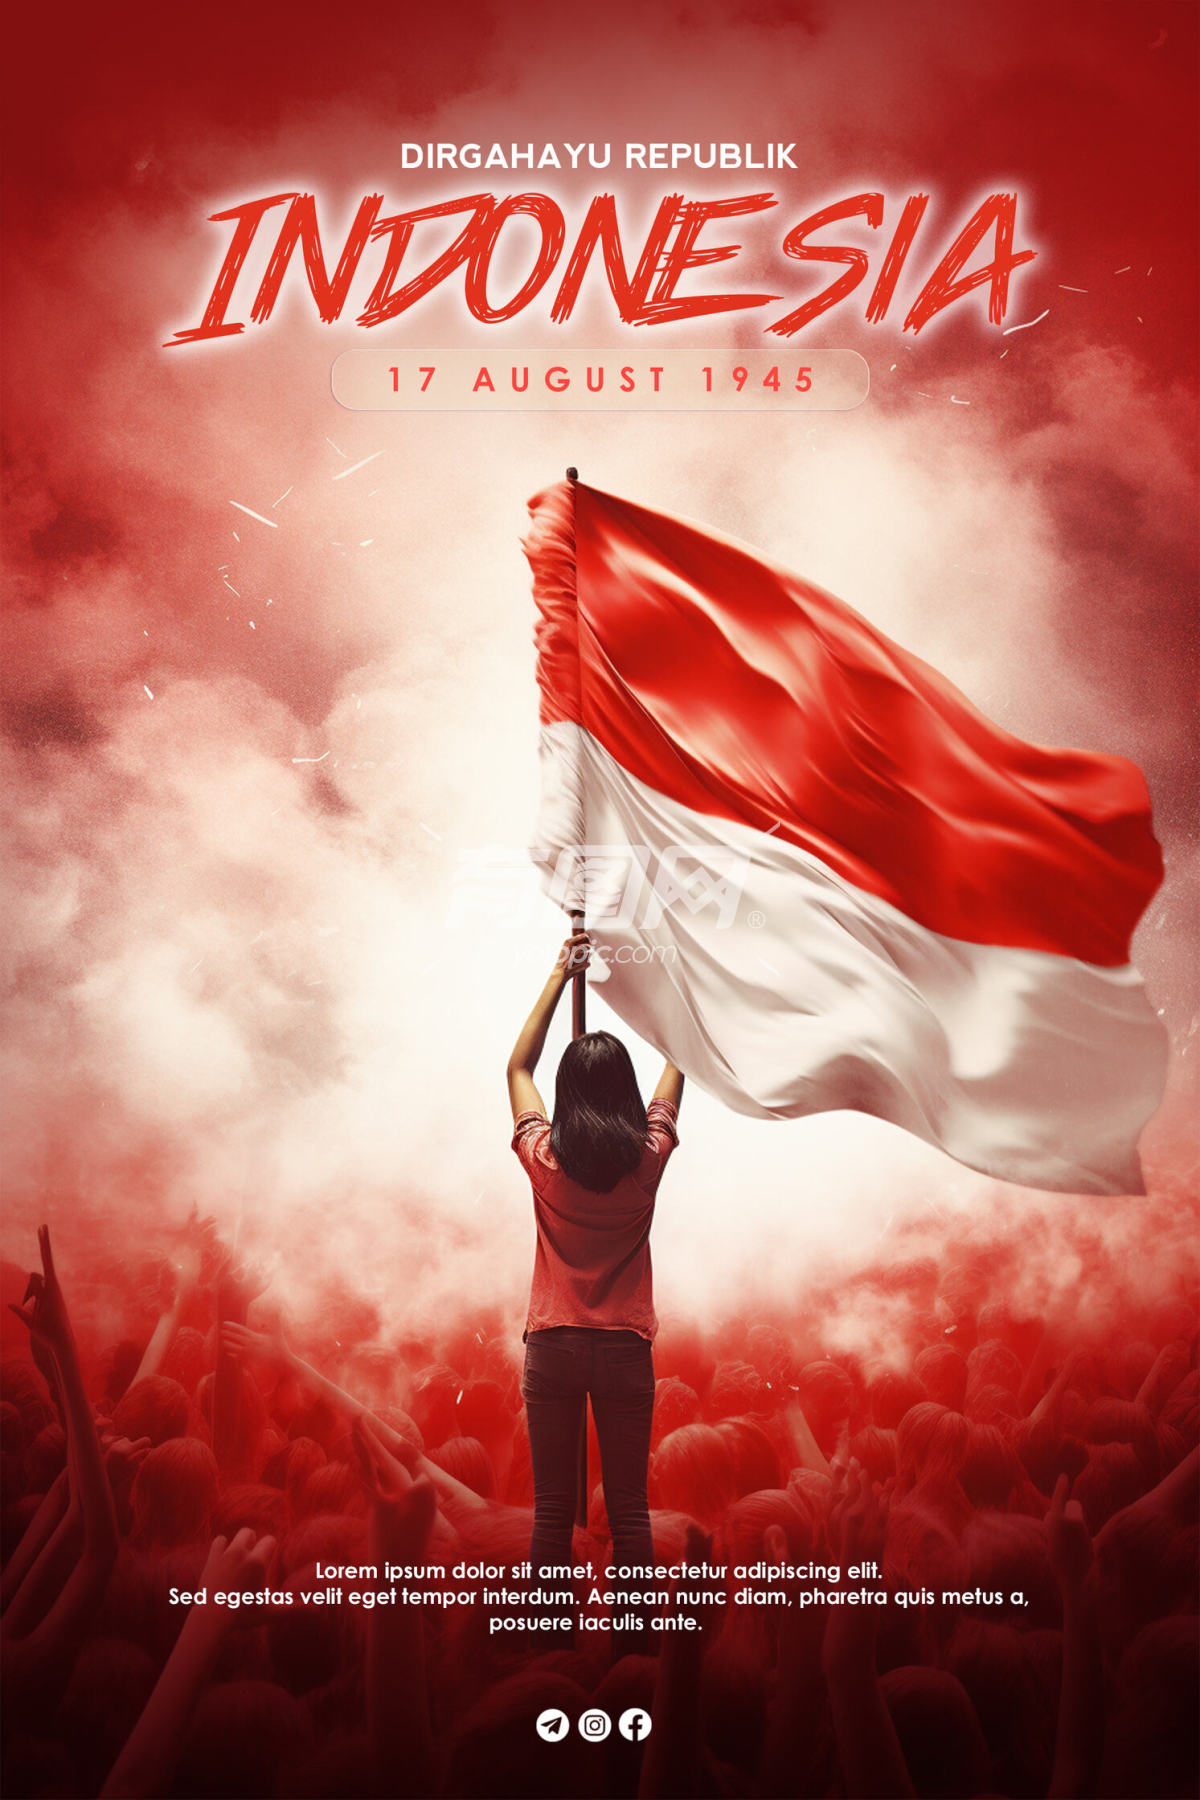 印尼独立日